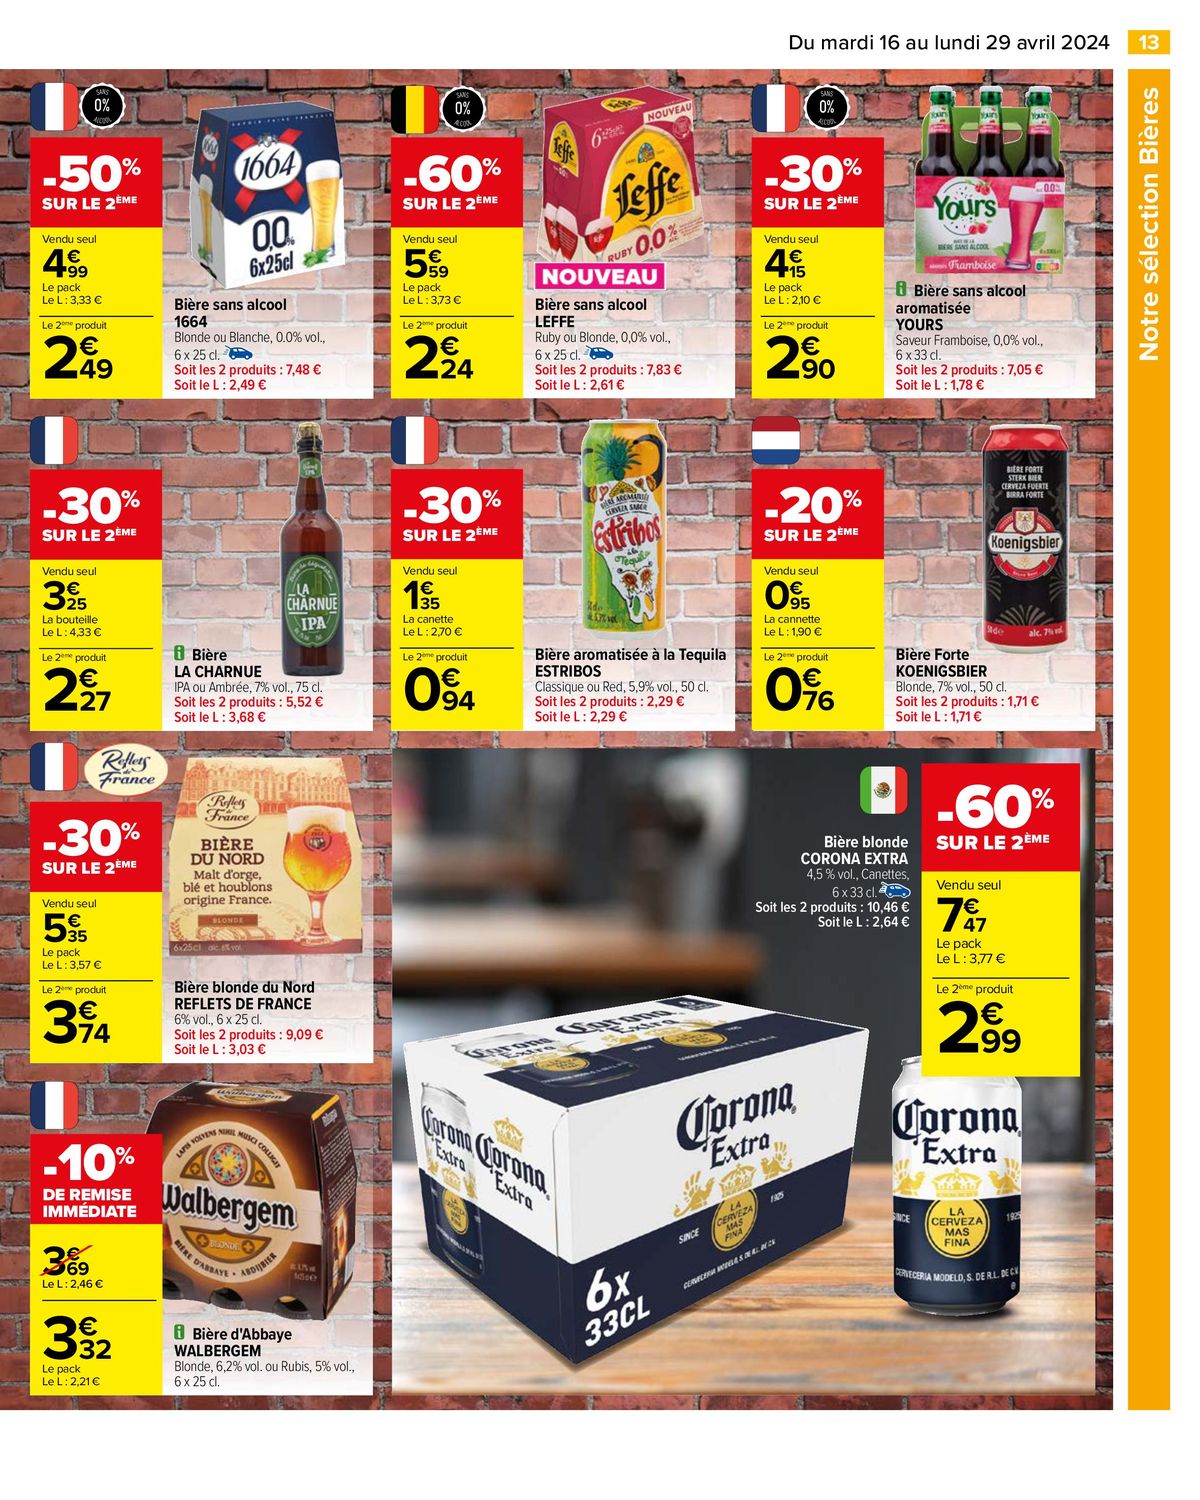 Catalogue Notre sélection Bières, page 00015